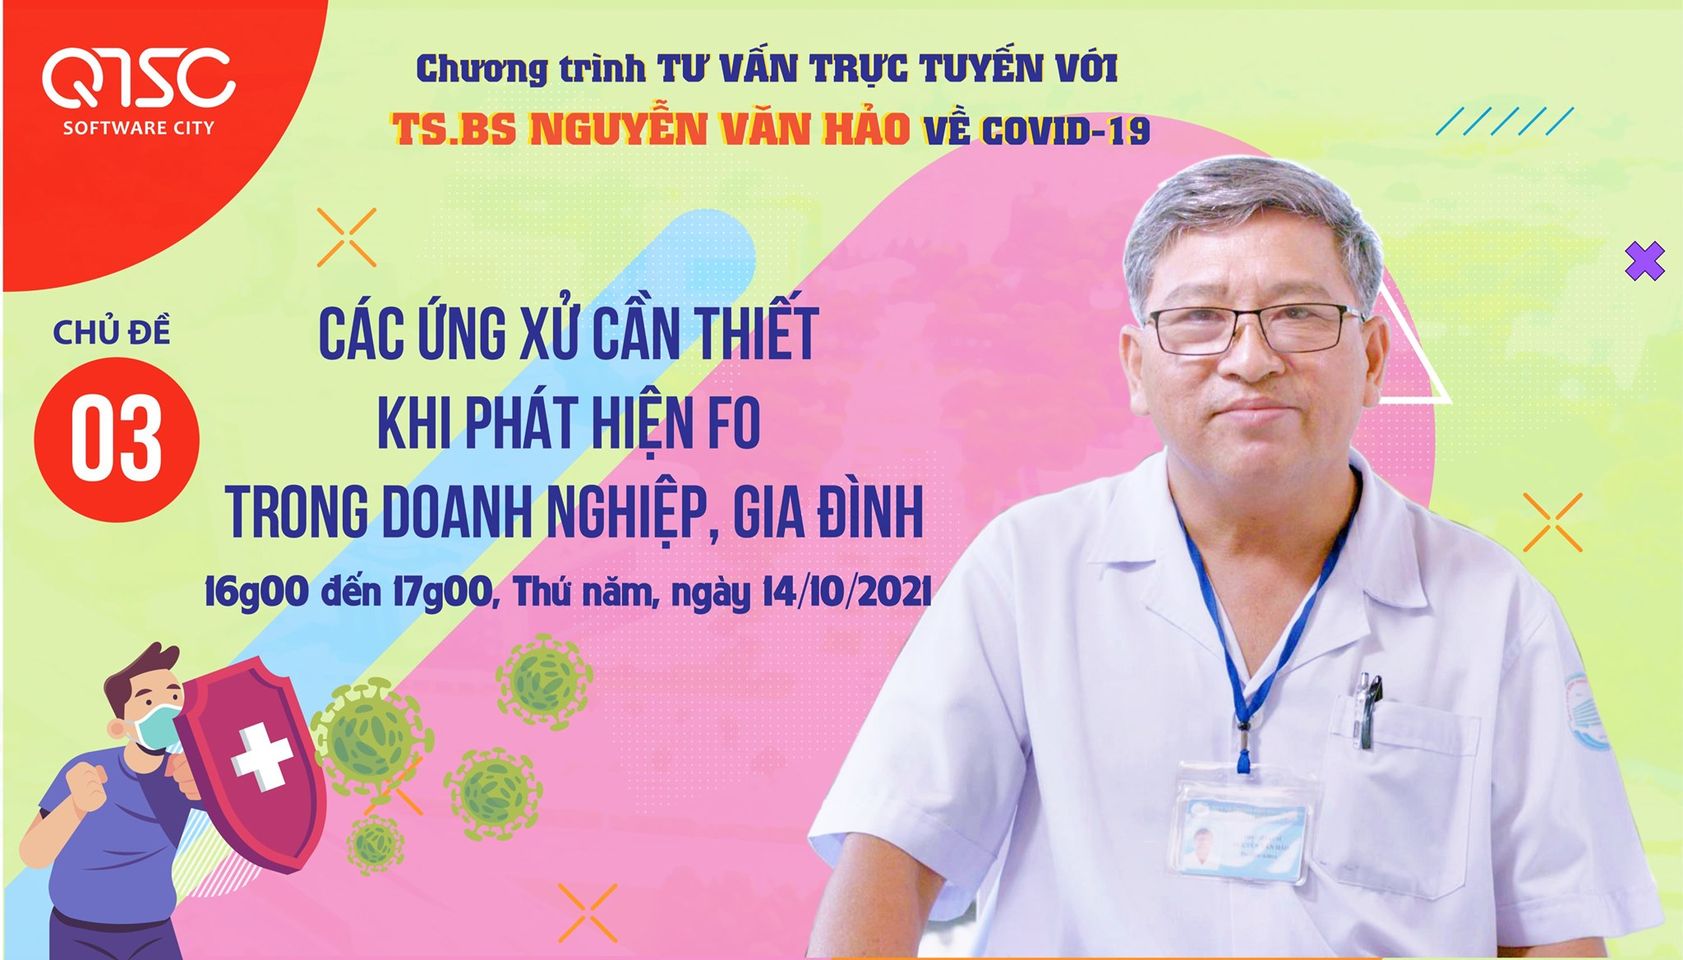 Chương trình tư vấn trực tuyến định kỳ của TS.BS Nguyễn Văn Hảo về “Xét nghiệm Covid-19 và những vấn đề thường gặp”